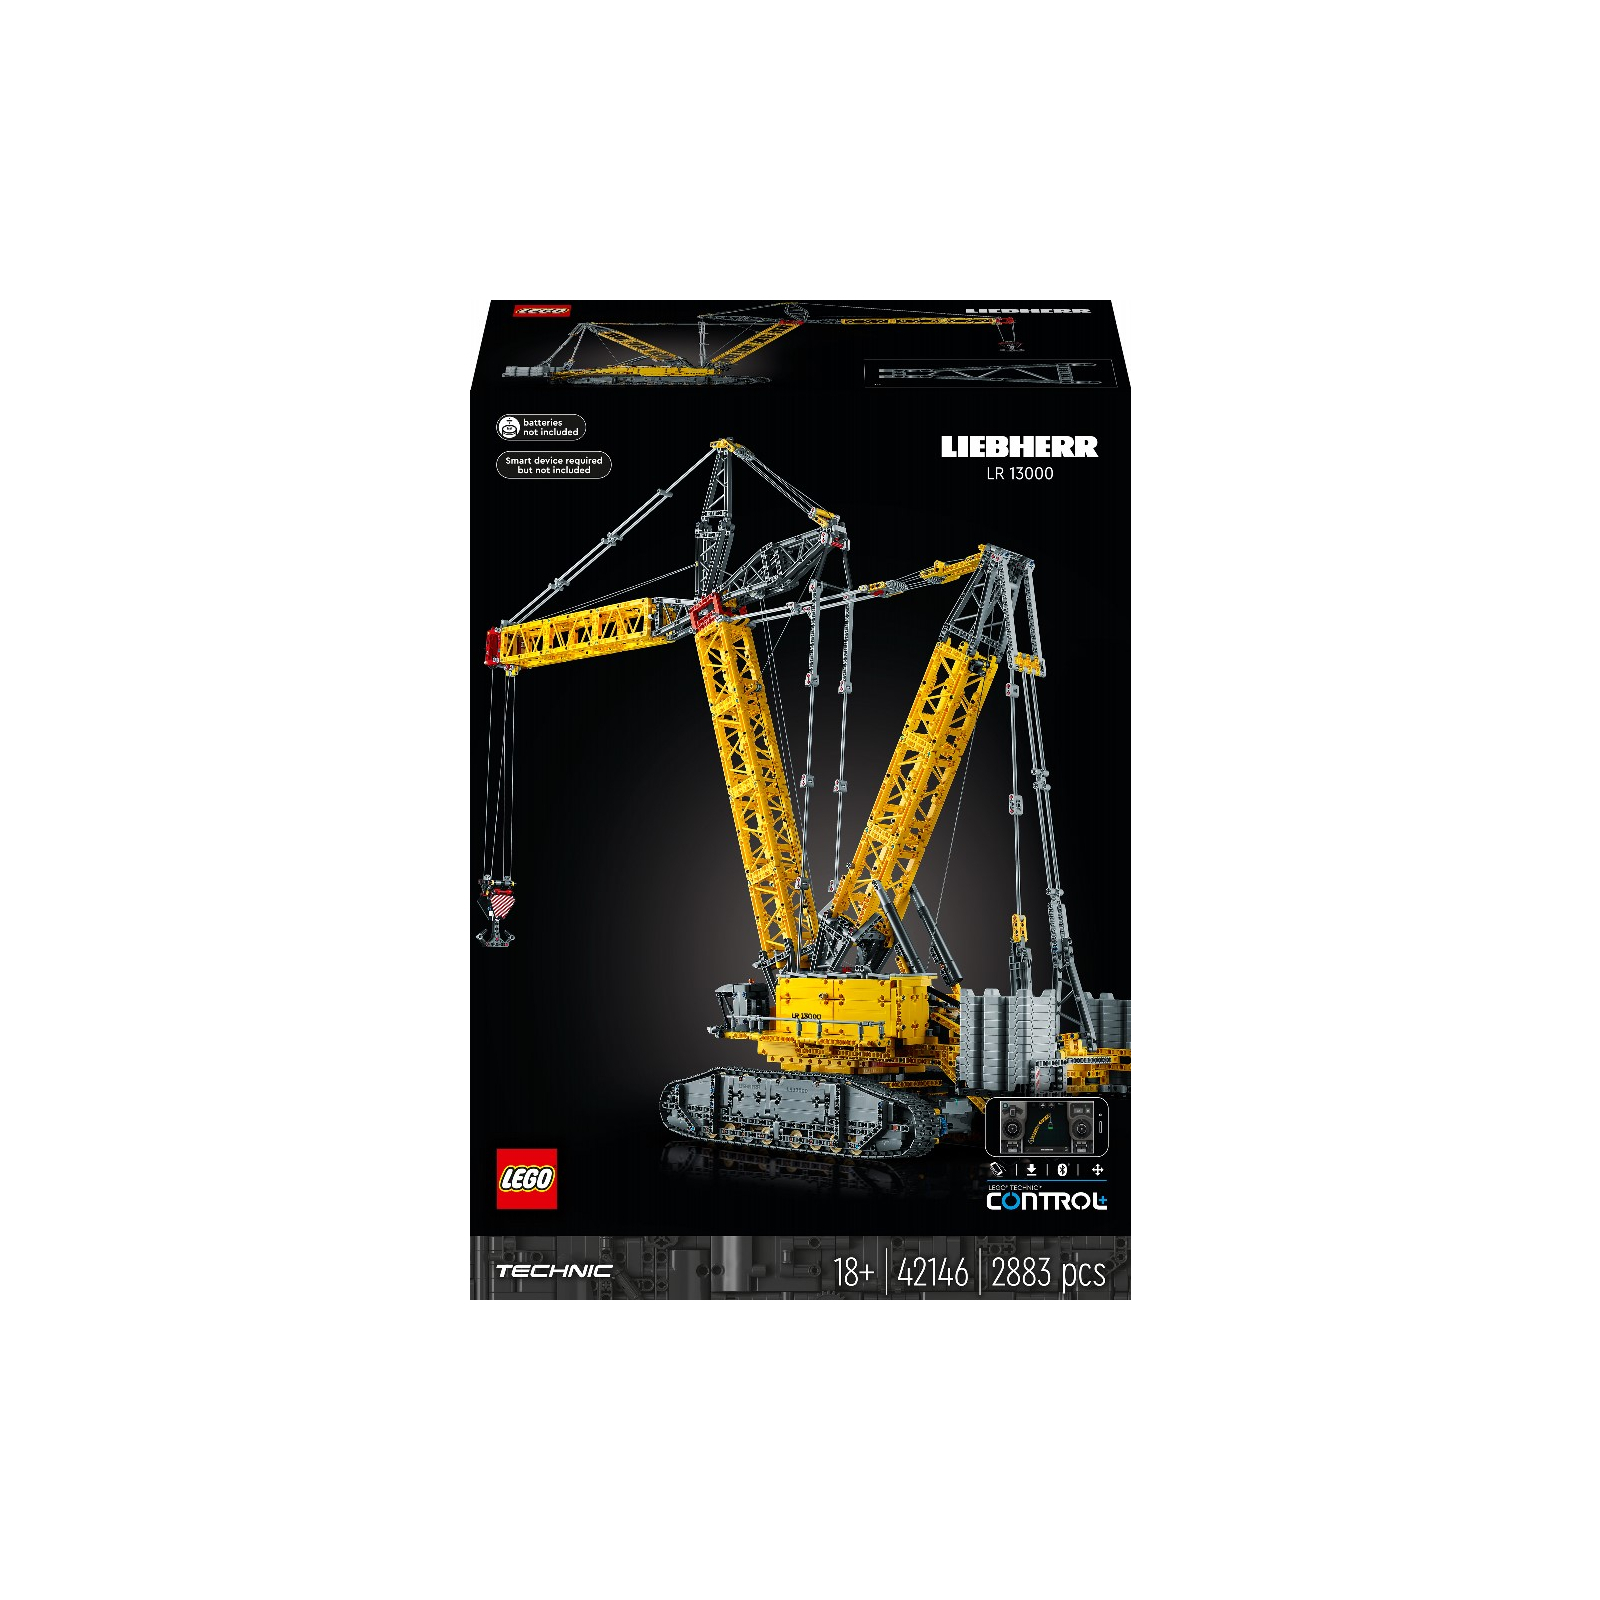 Конструктор LEGO Technic Гусеничный подъемный кран Liebherr LR 13000 2883 детали (42146)